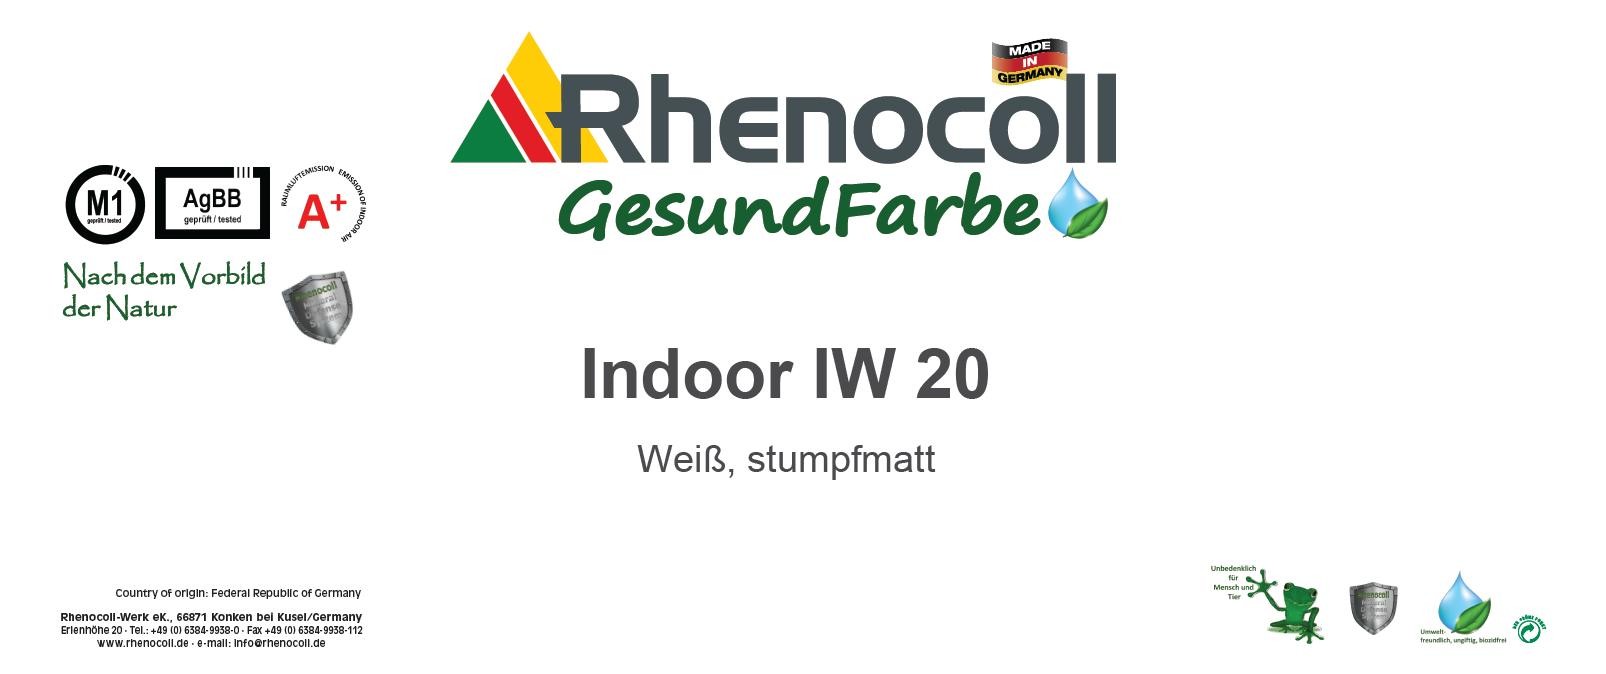 Rhenocoll Indoor IW 20